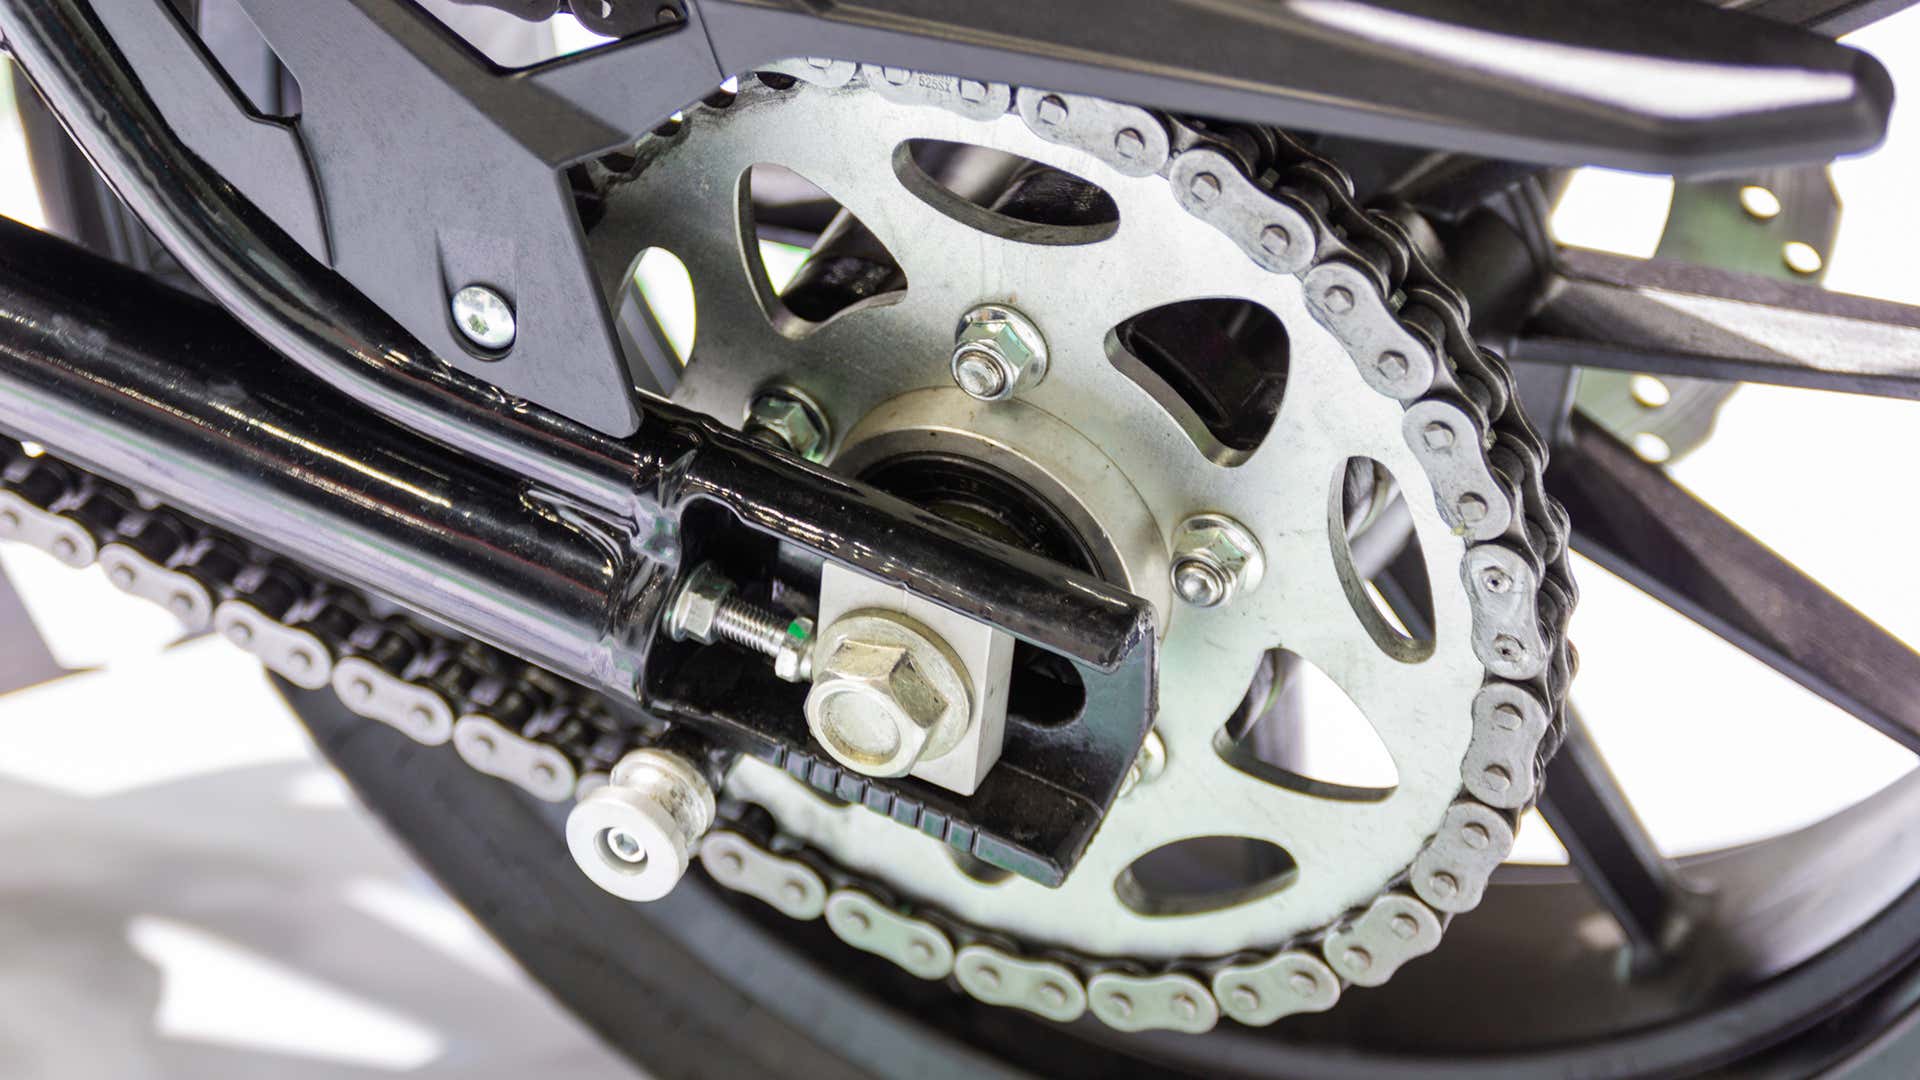 摩托车链条需要定期清洁和润滑。